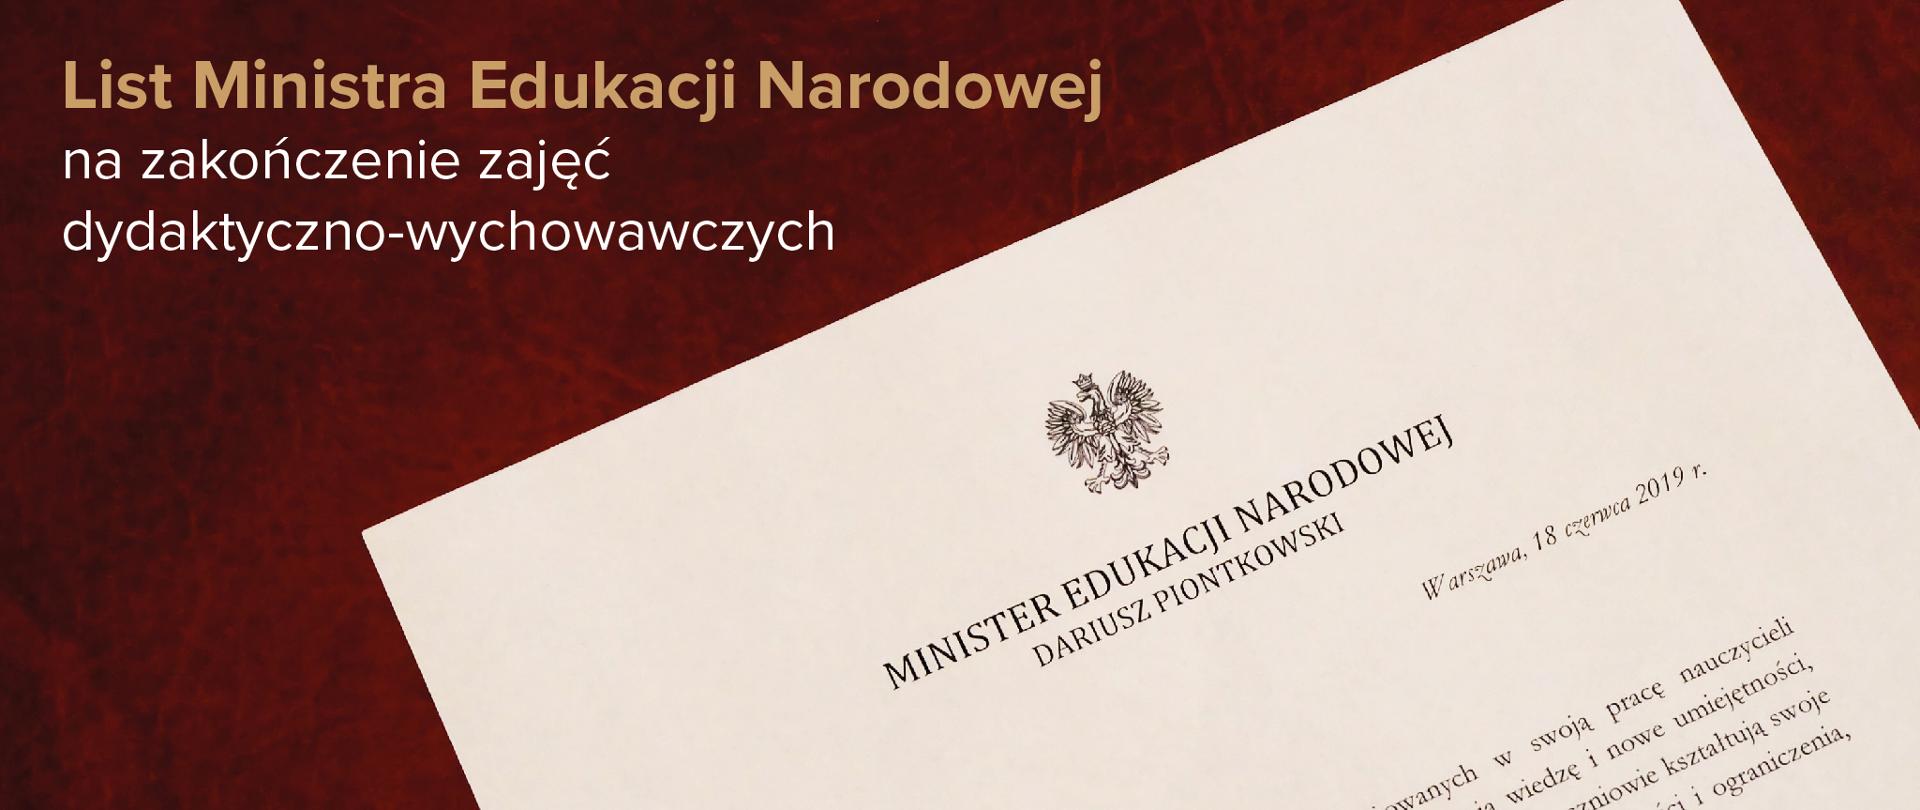 List Ministra Edukacji Narodowej na zakończenie zajęć dydaktyczno-wychowawczych